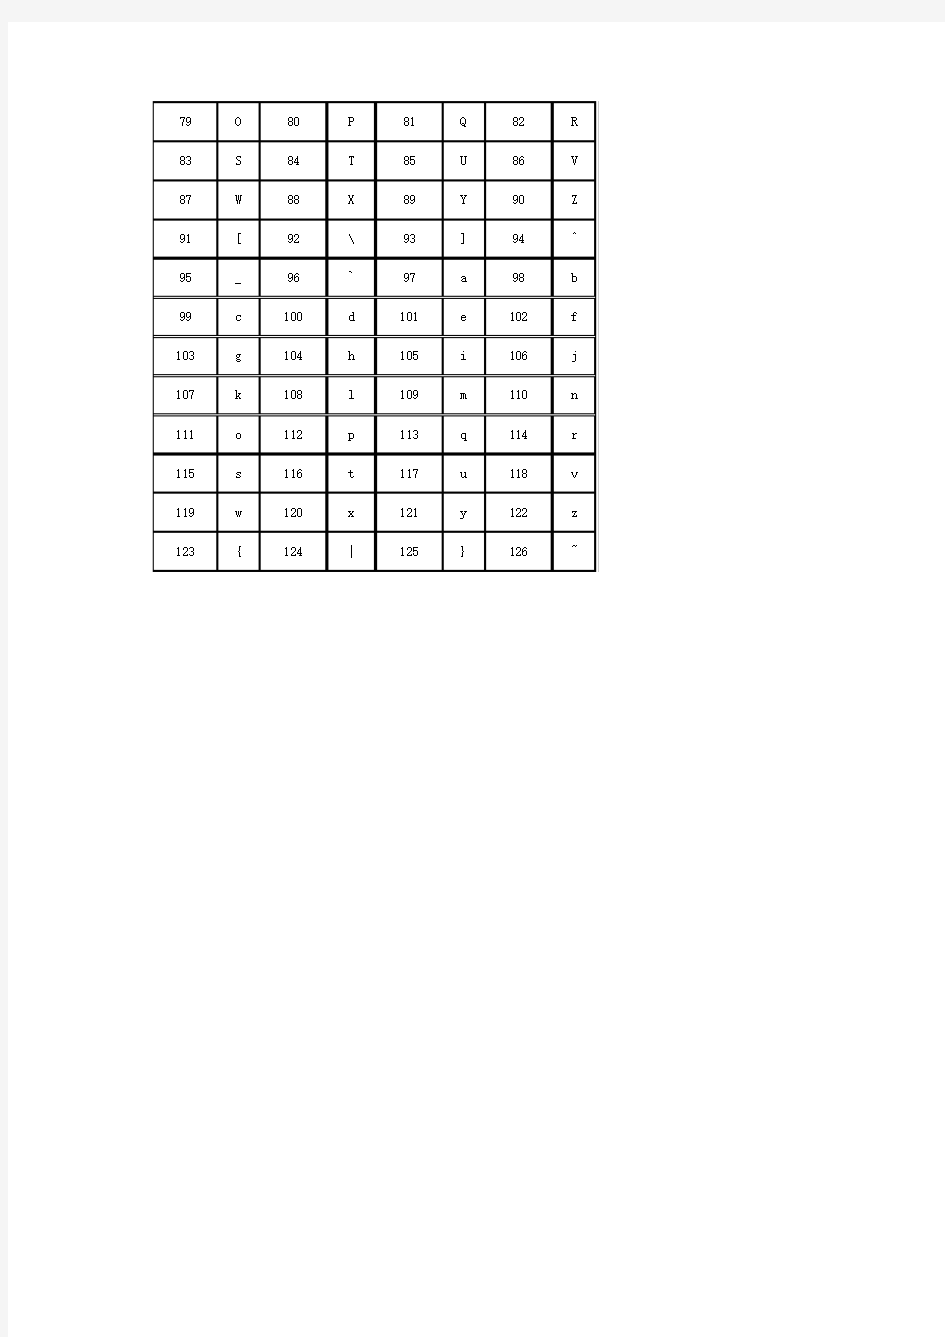 26个字母和数字符号ASCII码对照表